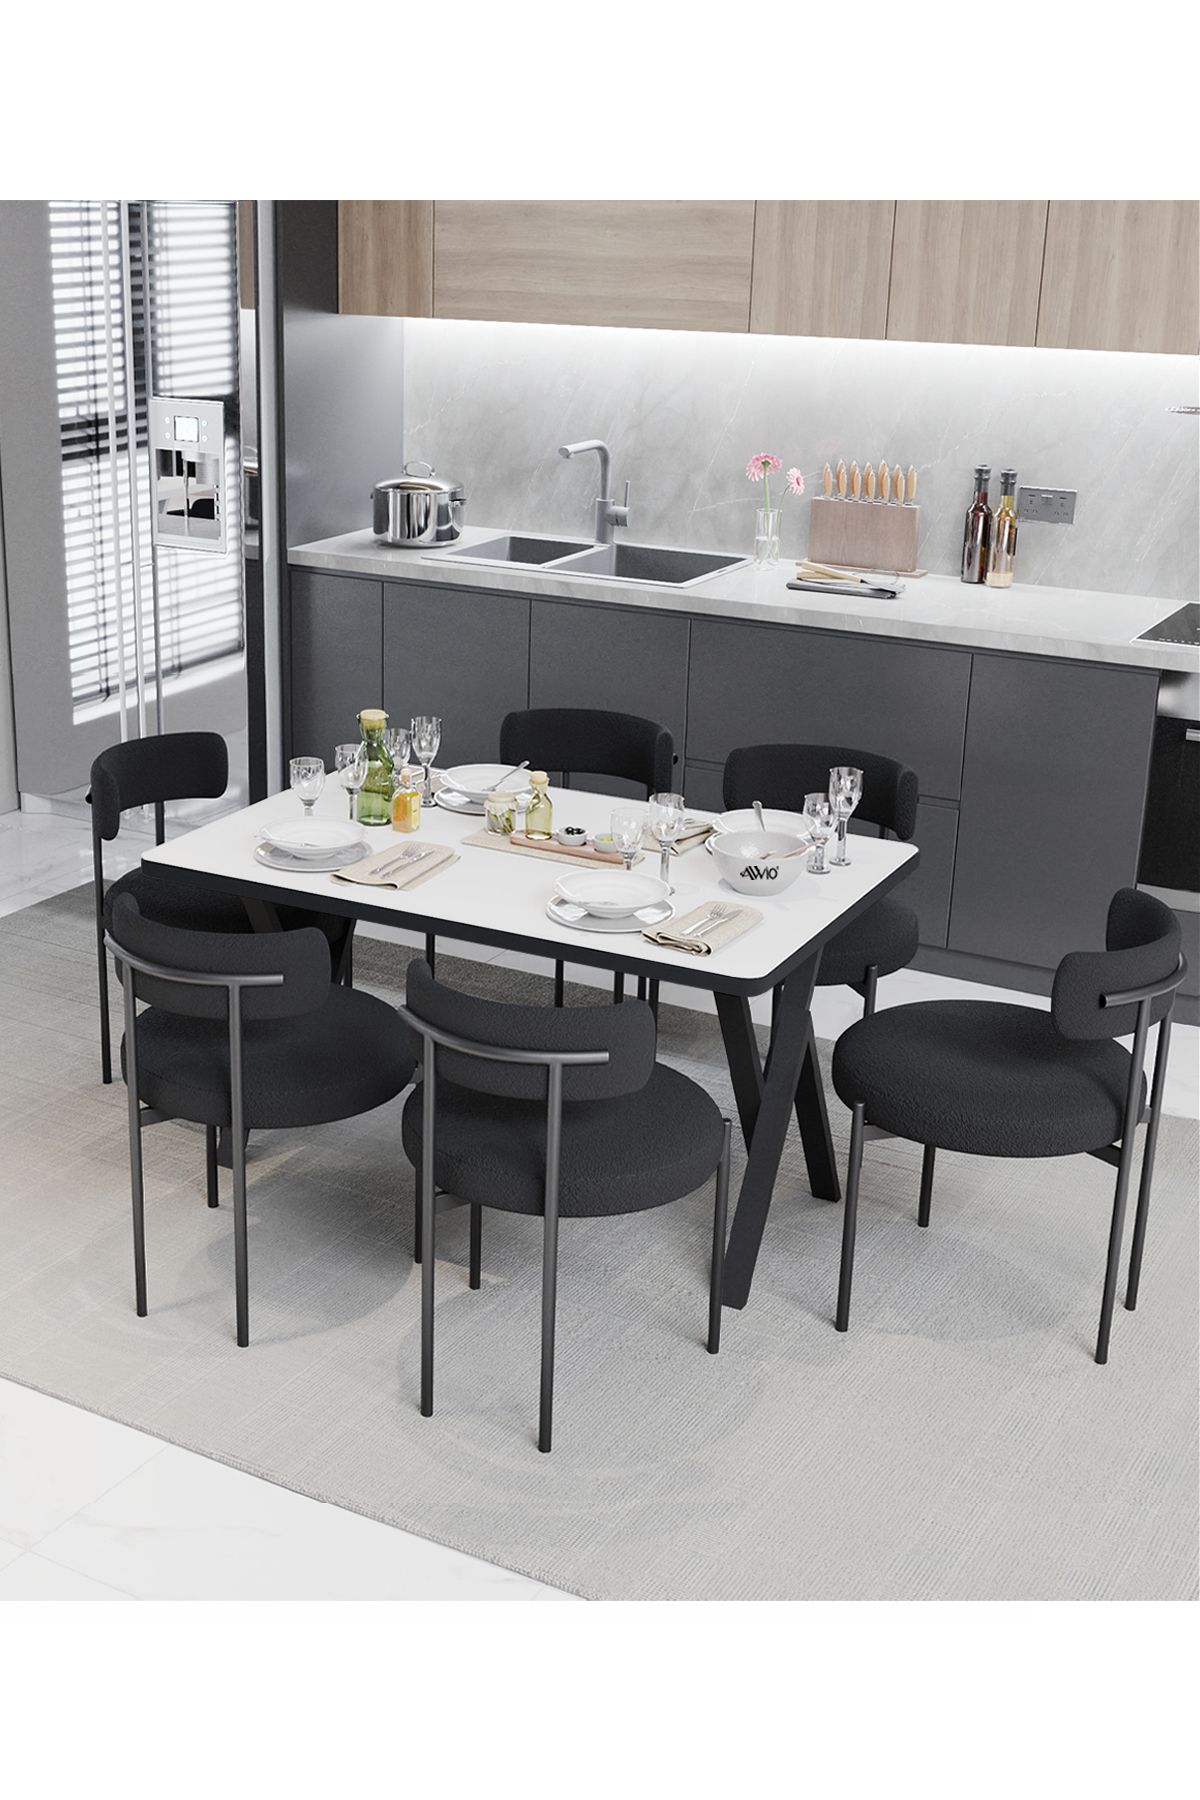 Avvio Margo  Teddy Sandalye 80x140 Yemek Masası Mutfak Masası 6 Kişilik Masa Sandalye Takımı